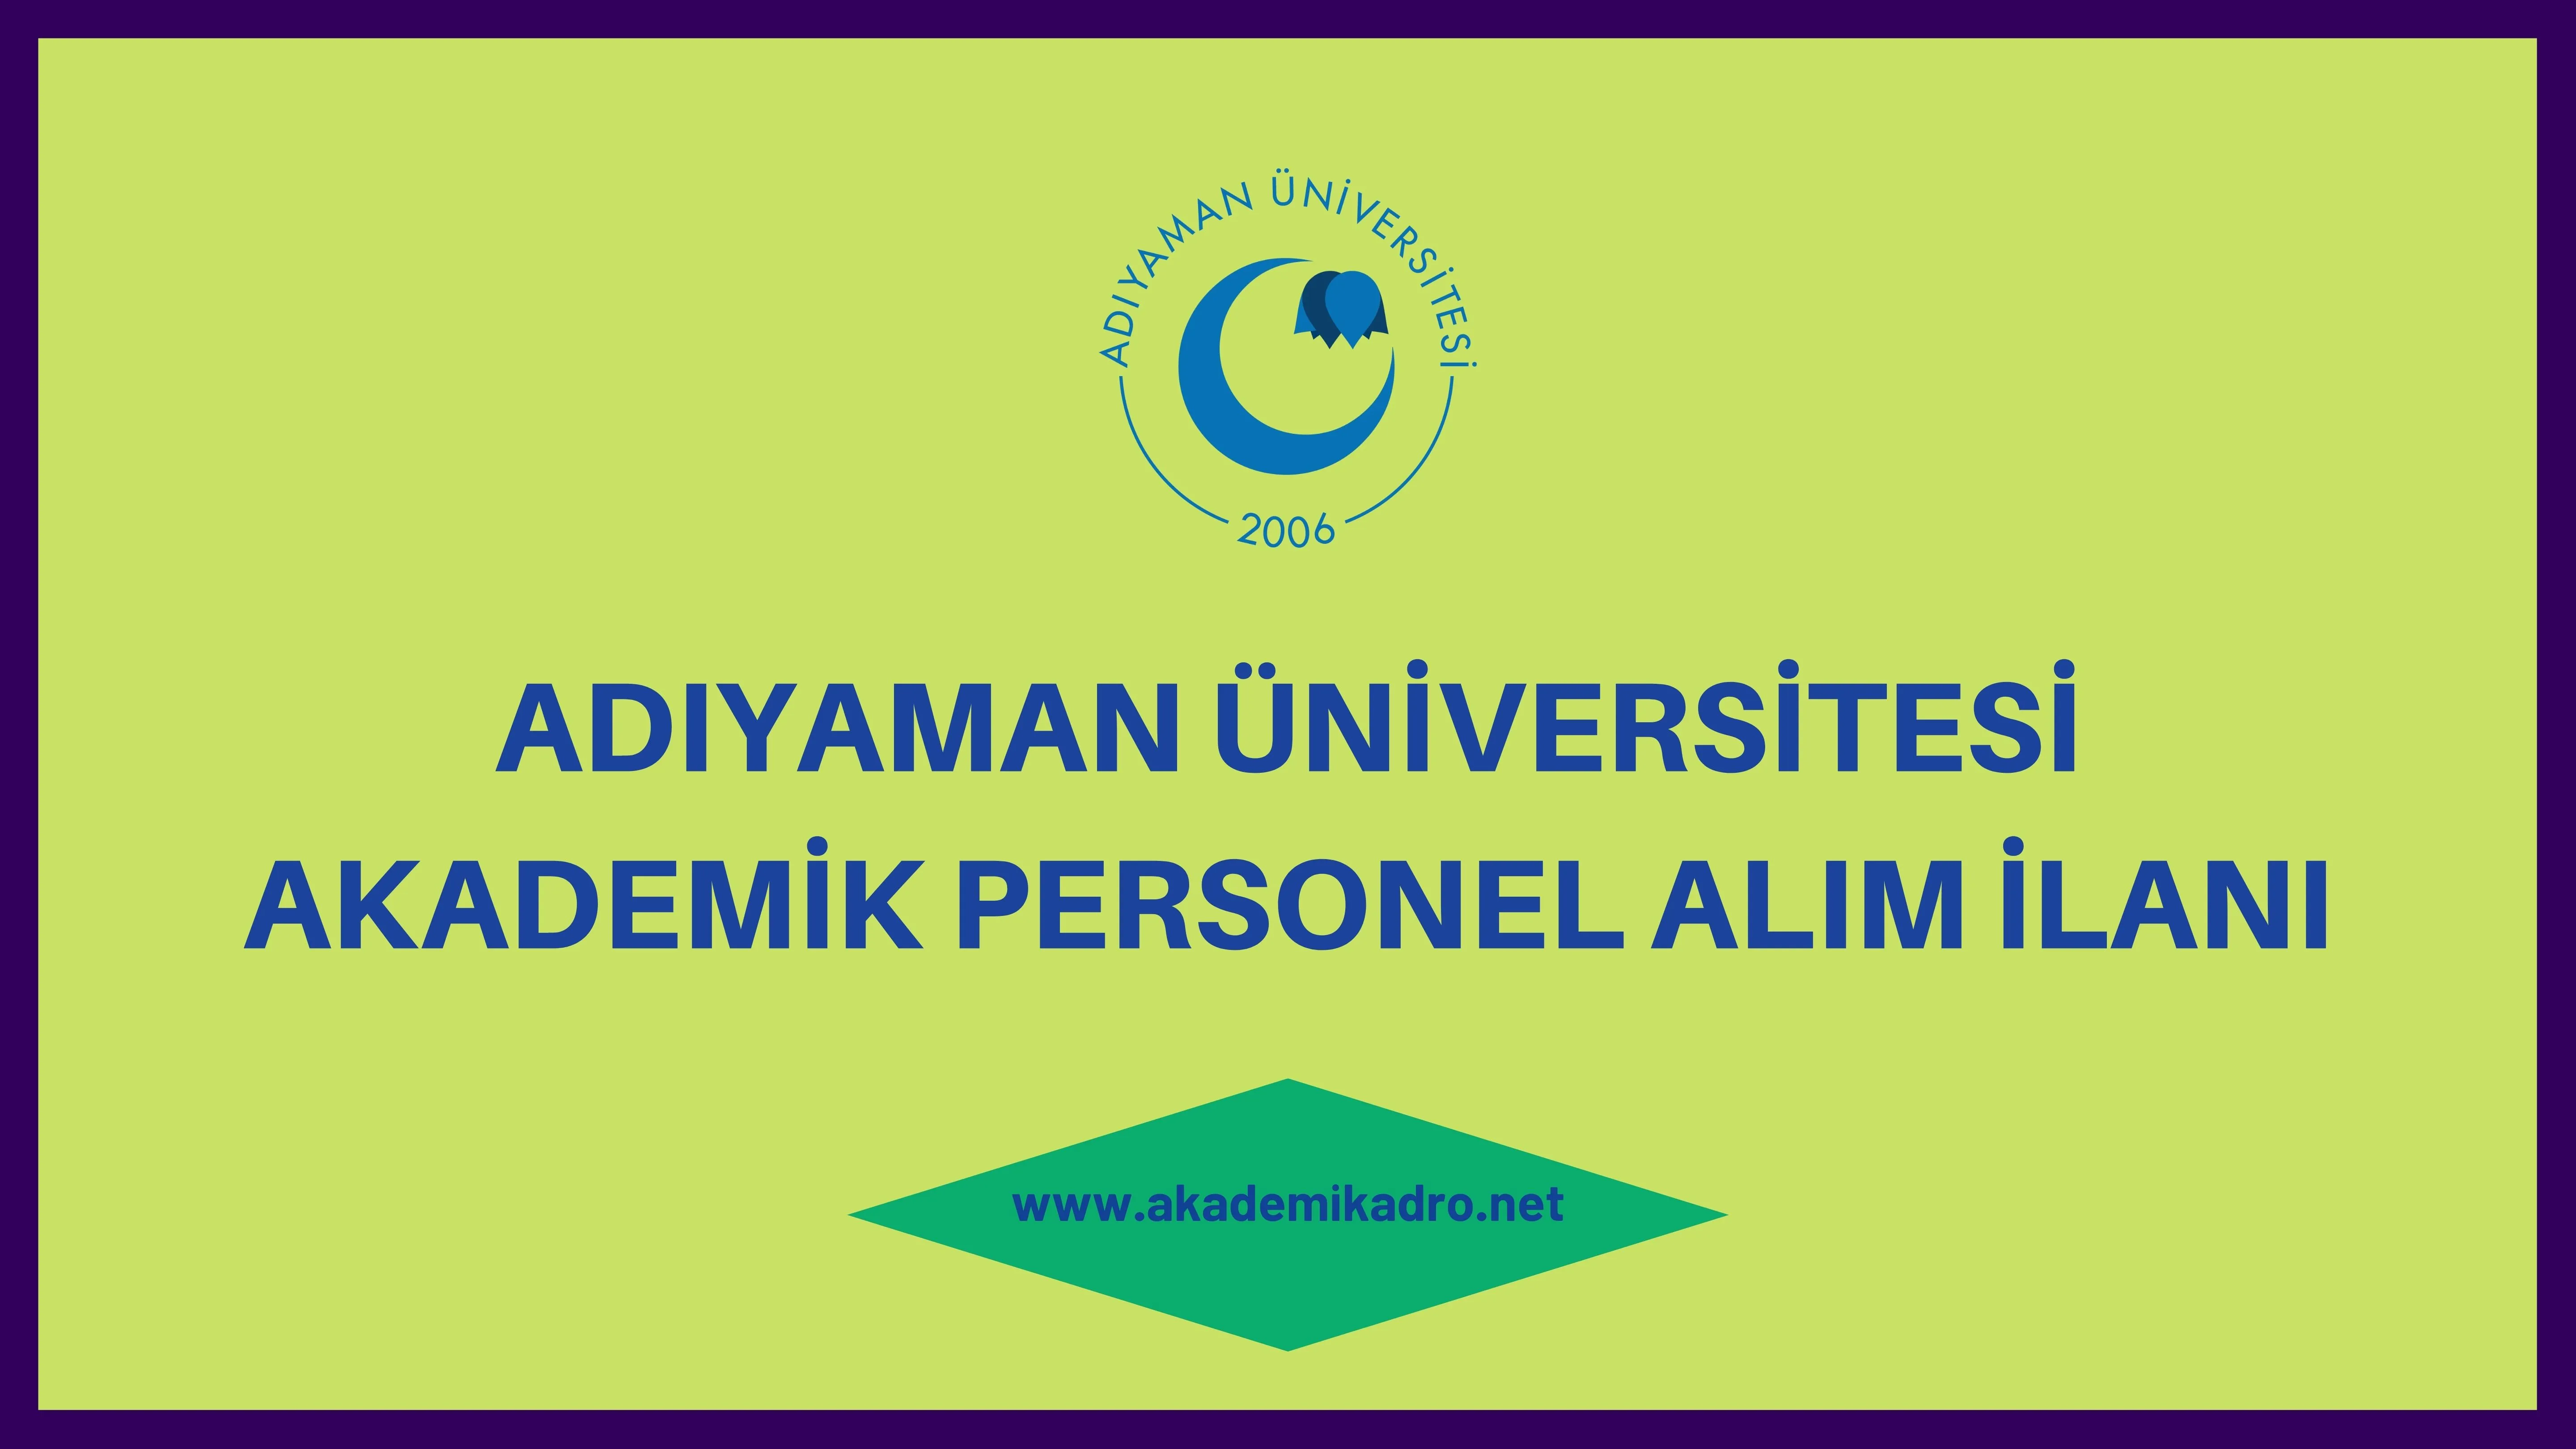 Adıyaman Üniversitesi birçok alandan 47 akademik personel alacak.